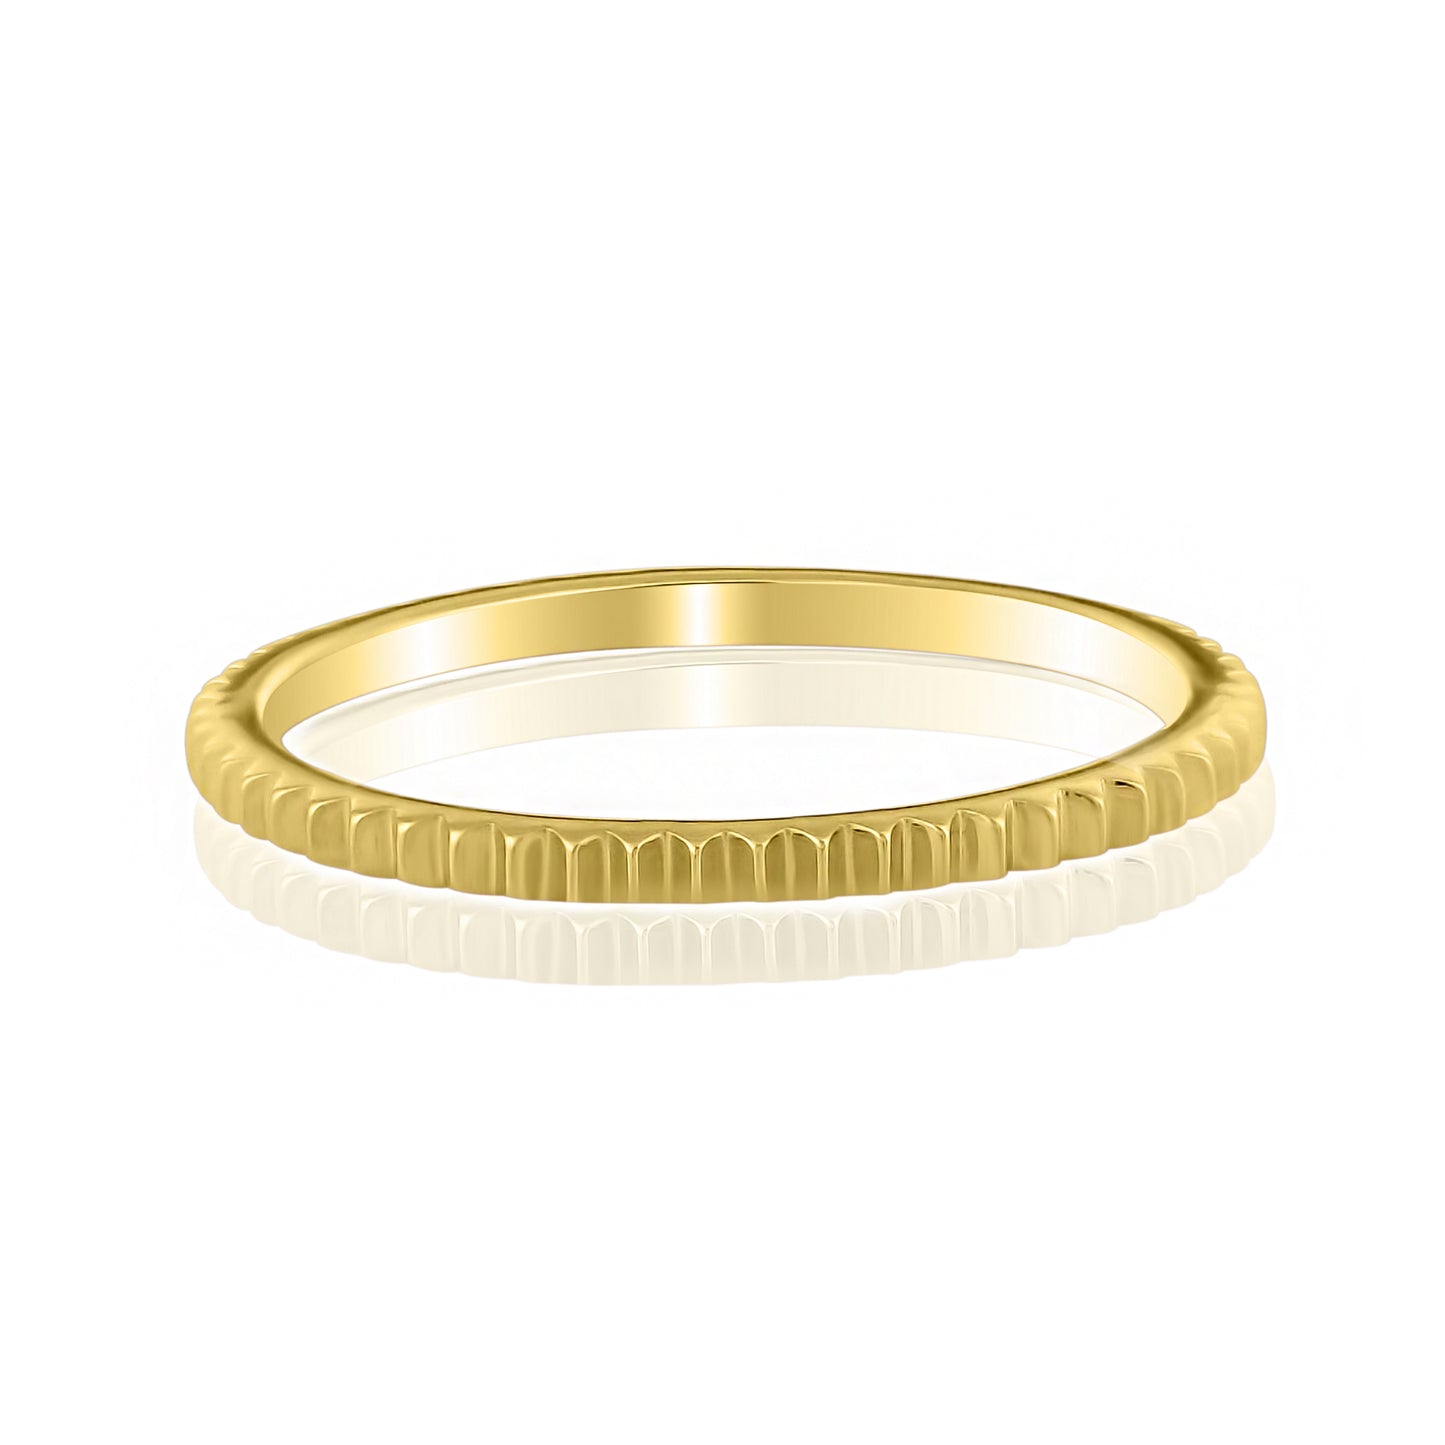 Narrow Ribbed Texture 14K Gold Ring